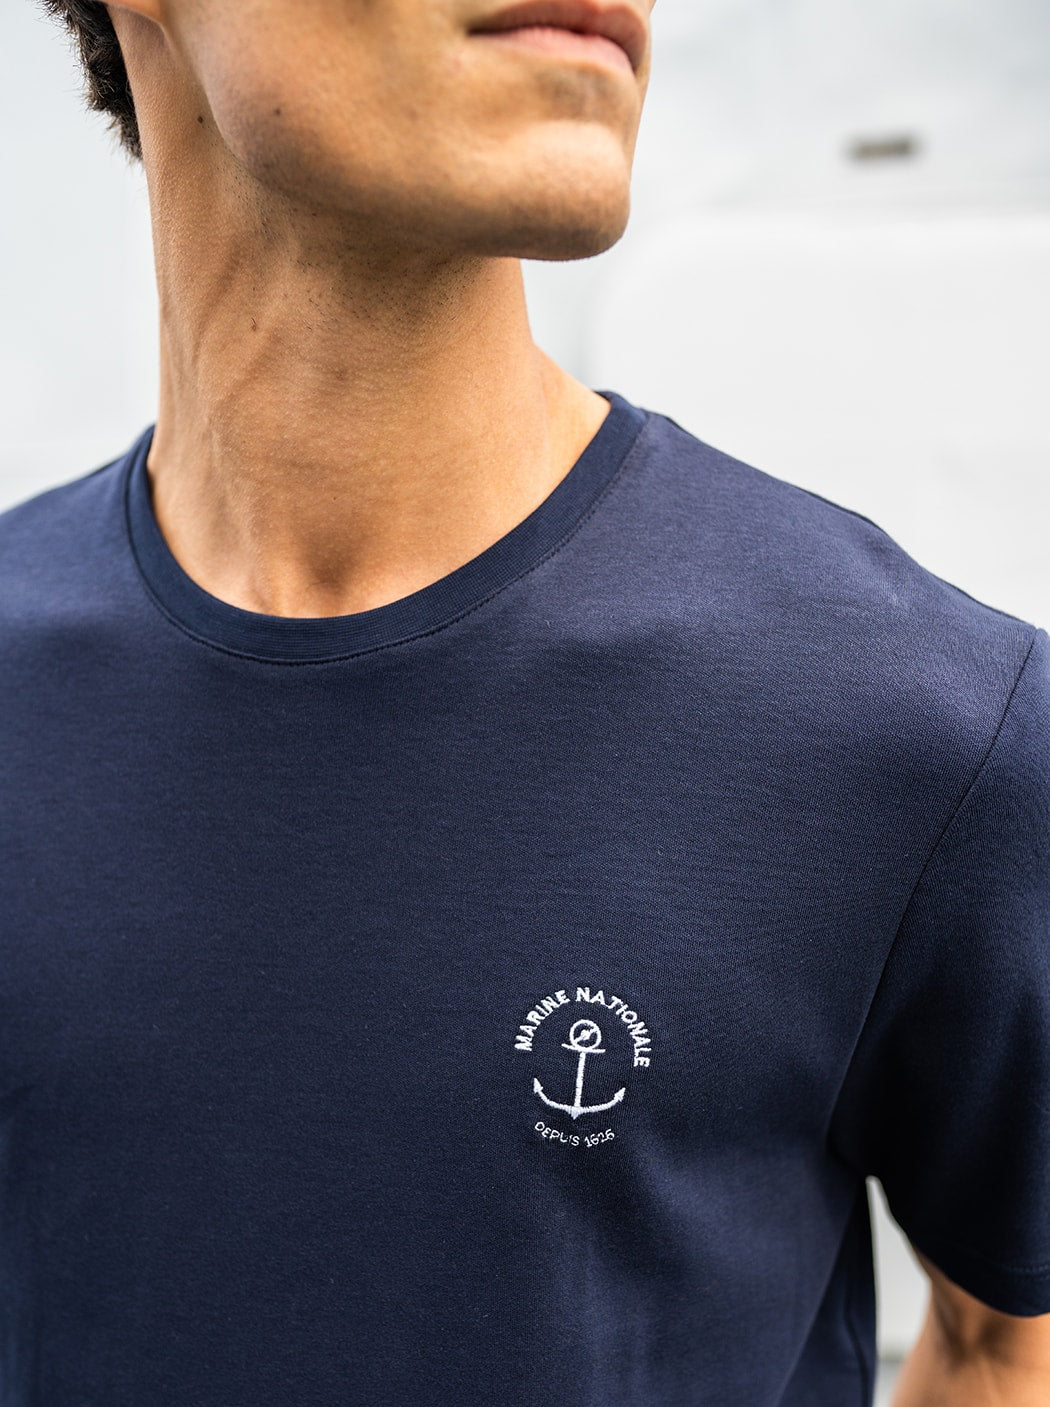 Tee-shirt brodé « Marine nationale » #couleur_Océan